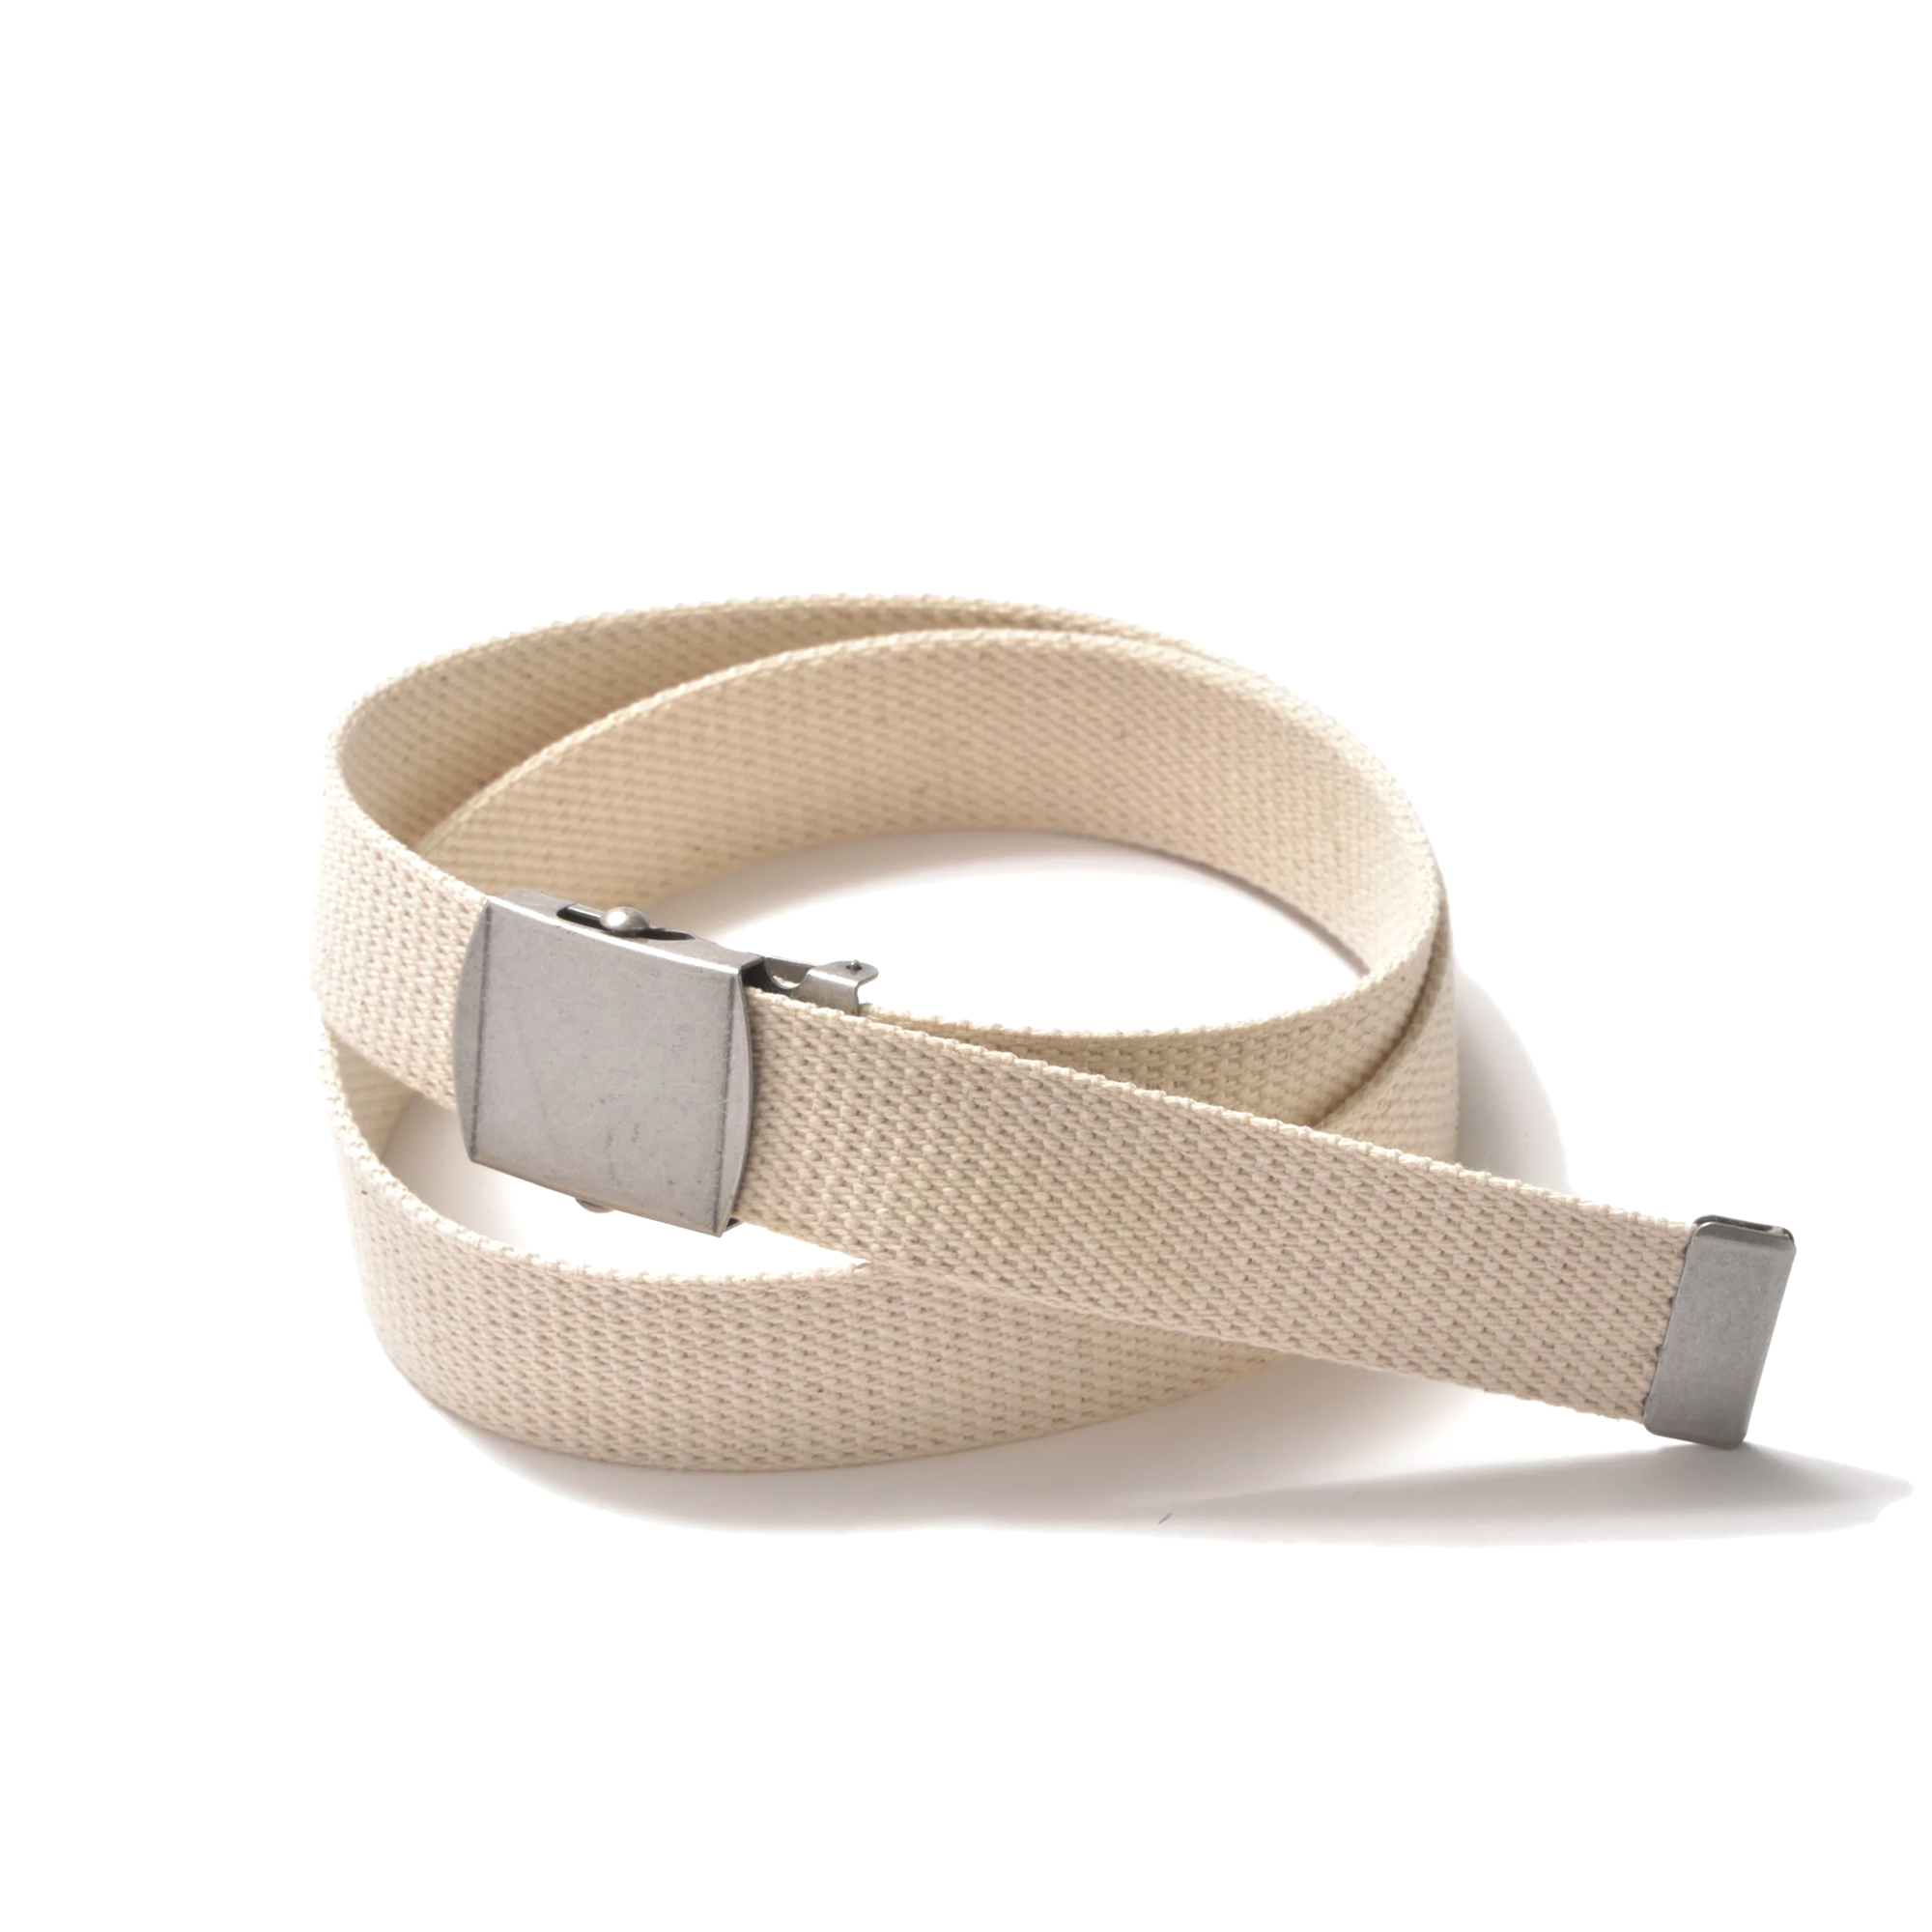 The Real McCoy's - White Trouser Uniform Belt (White)